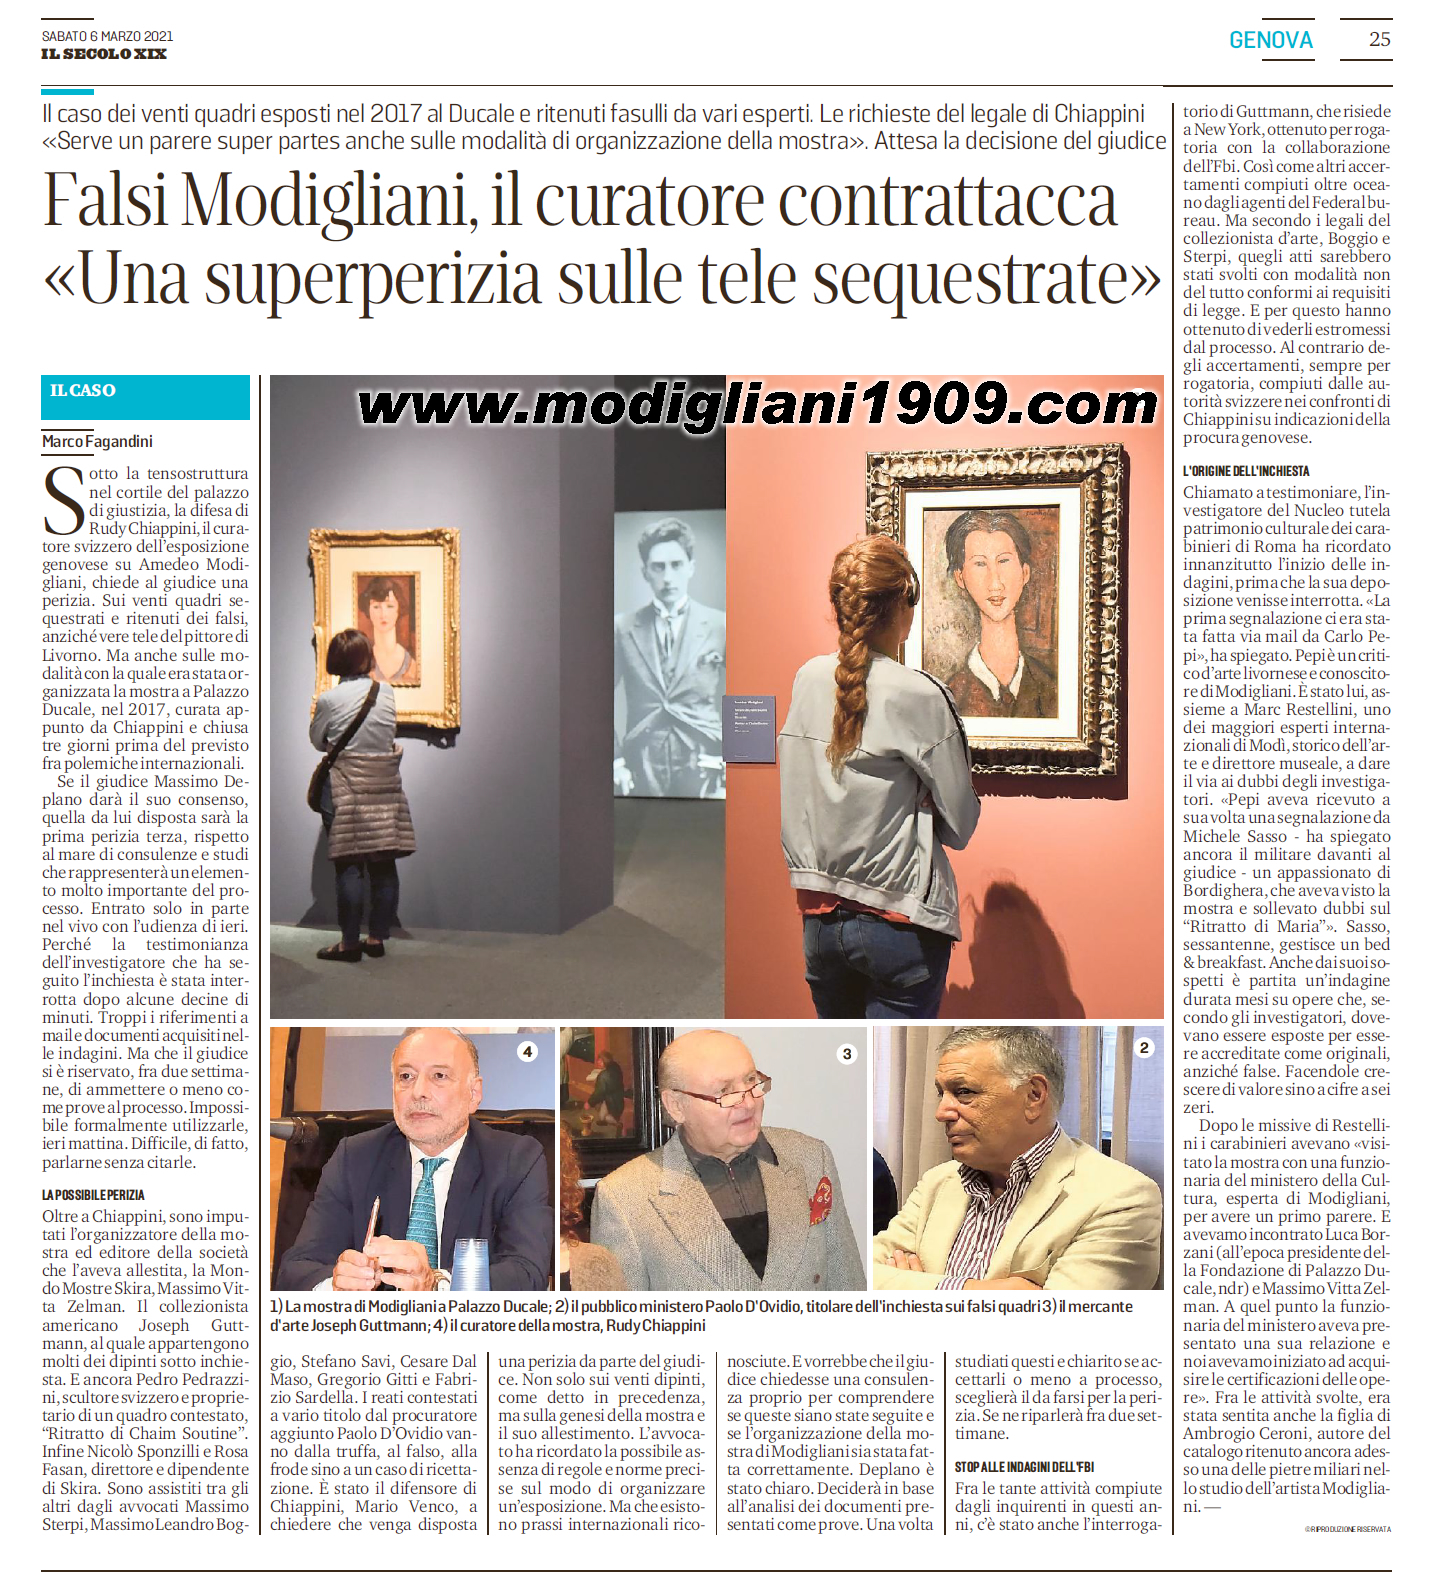 Falsi Modigliani, il curatore Chiappini contrattacca «Una superperizia sulle tele sequestrate»